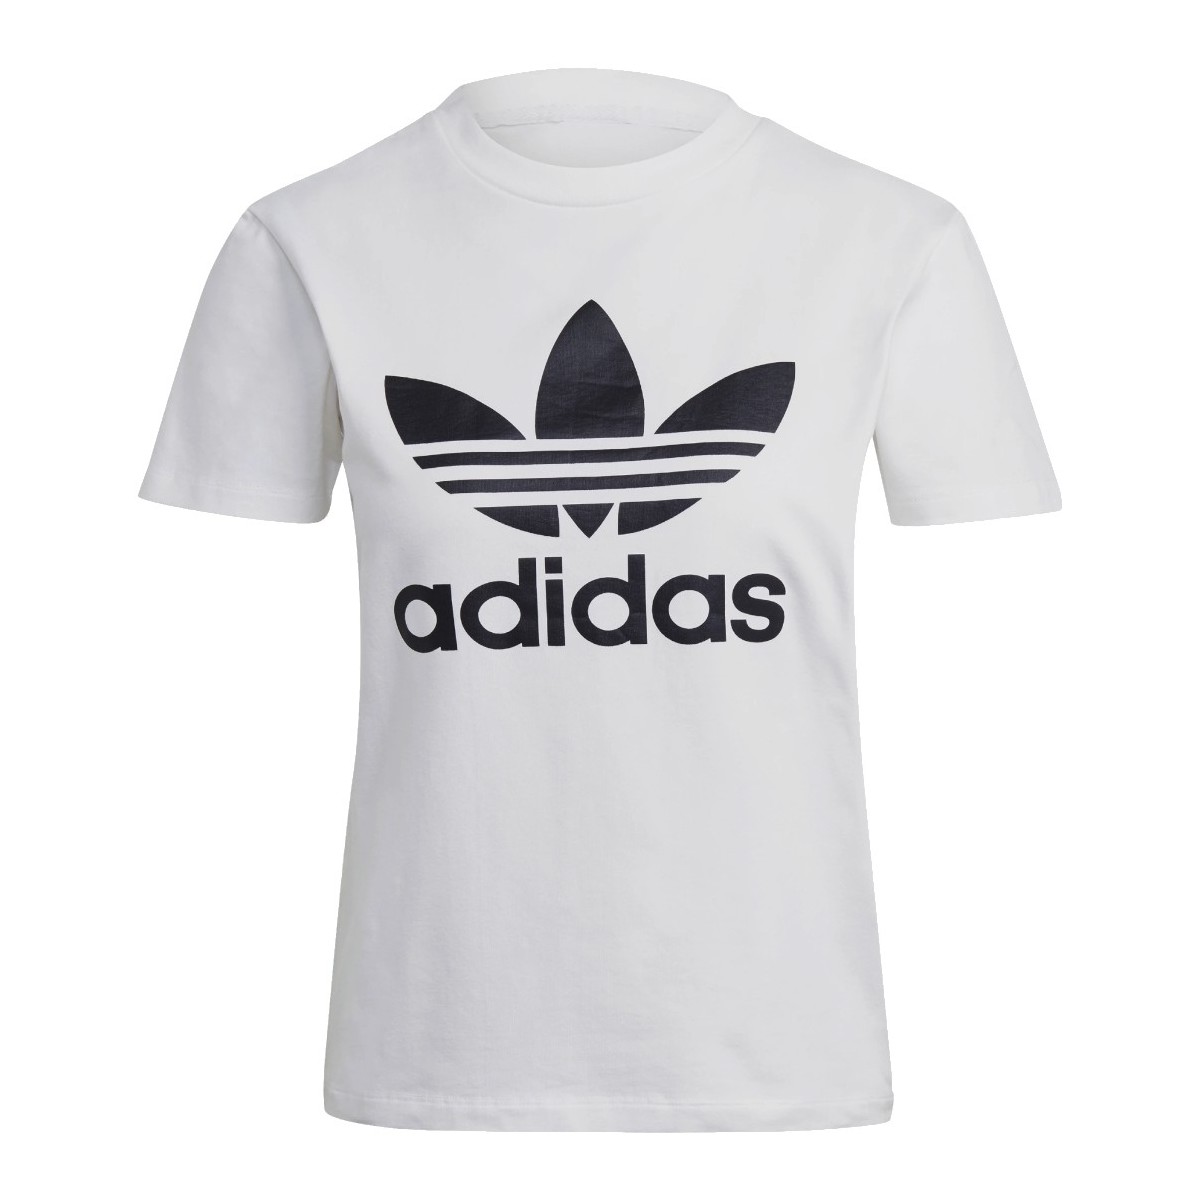 vaatteet Naiset Lyhythihainen t-paita adidas Originals adidas Adicolor Classics Trefoil Tee Valkoinen